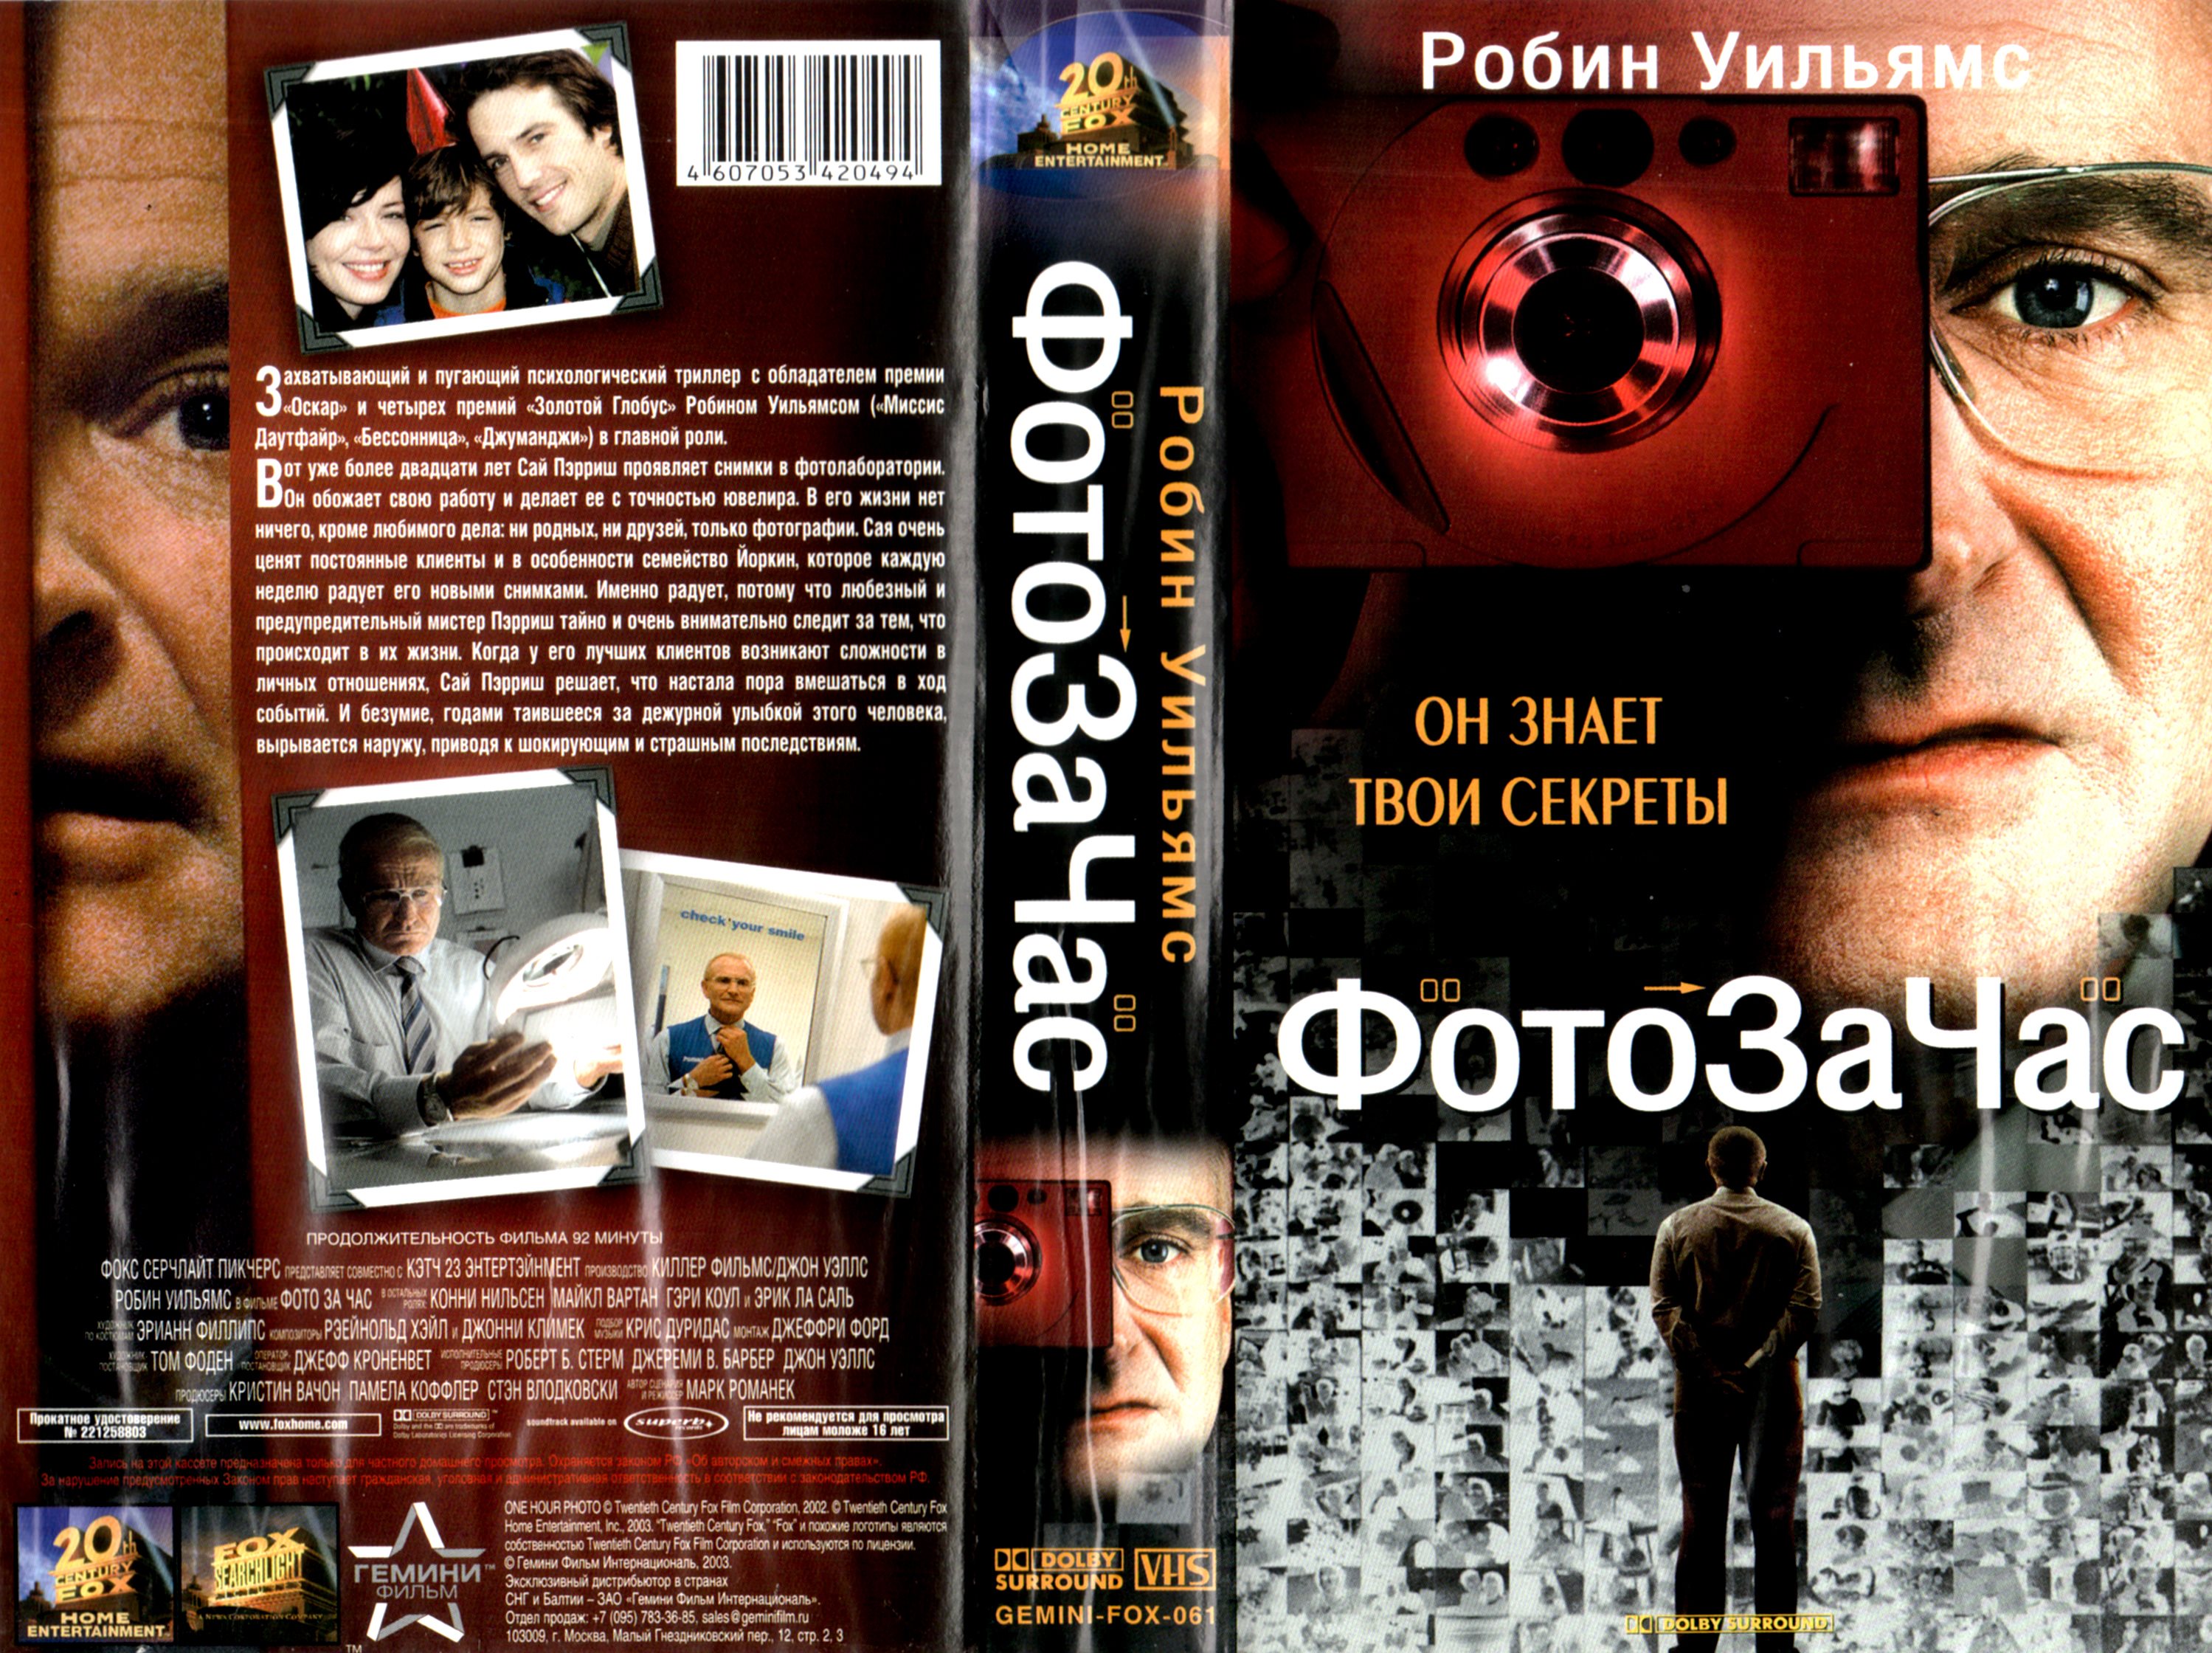 Гемини фильм DVD